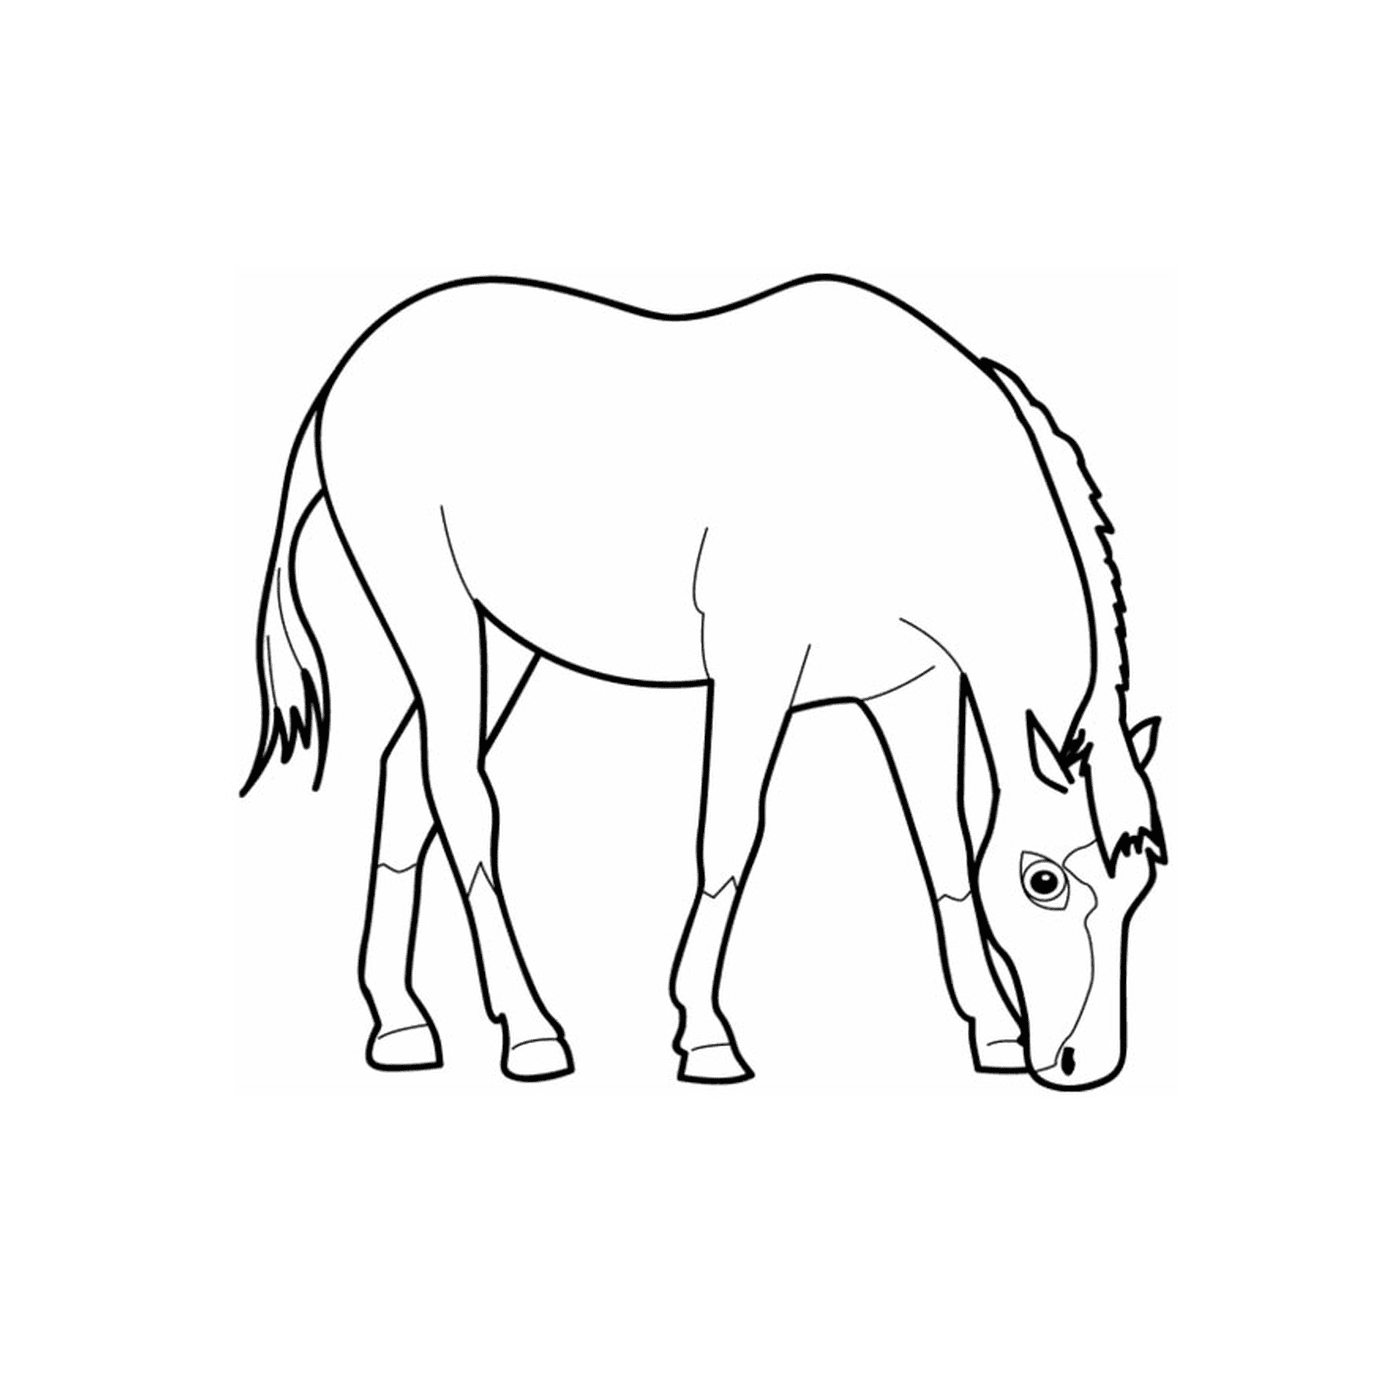  Single Horse - Un cavallo che naviga 